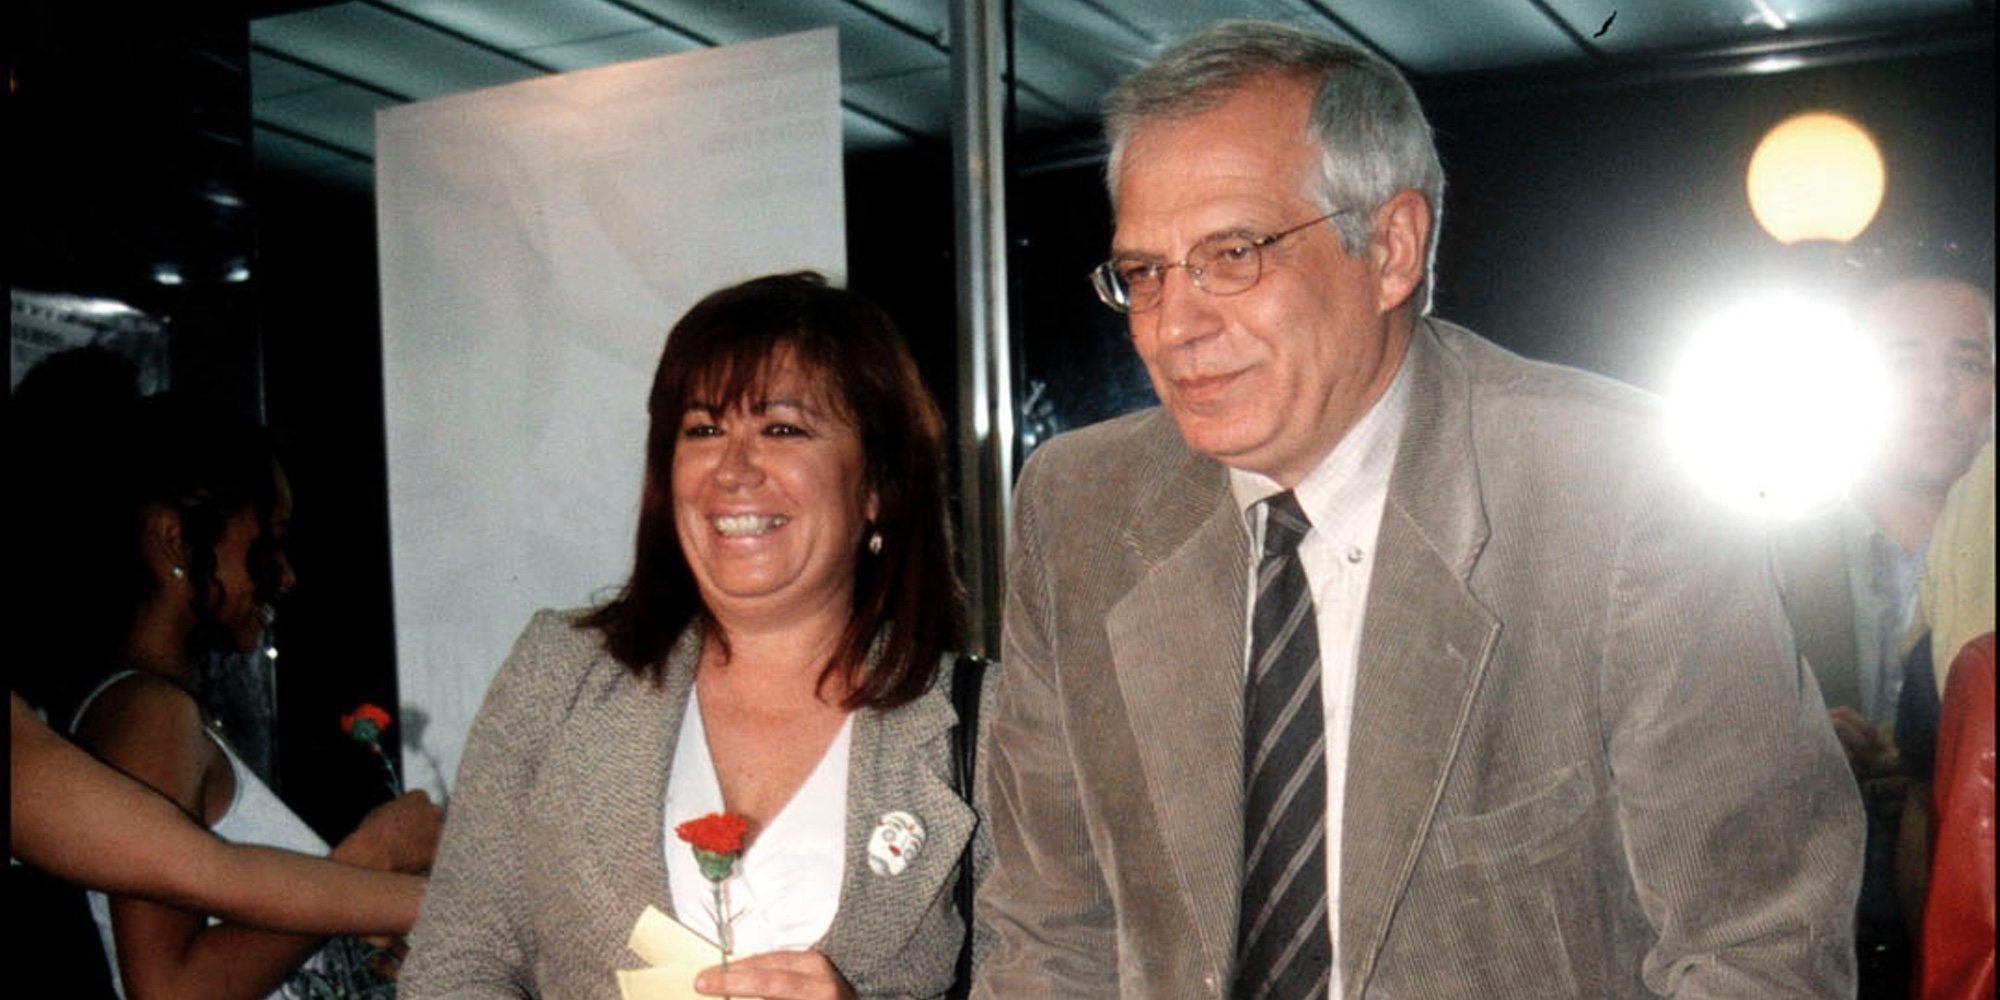 Josep Borrell y Cristina Narbona se han casado en una íntima boda secreta